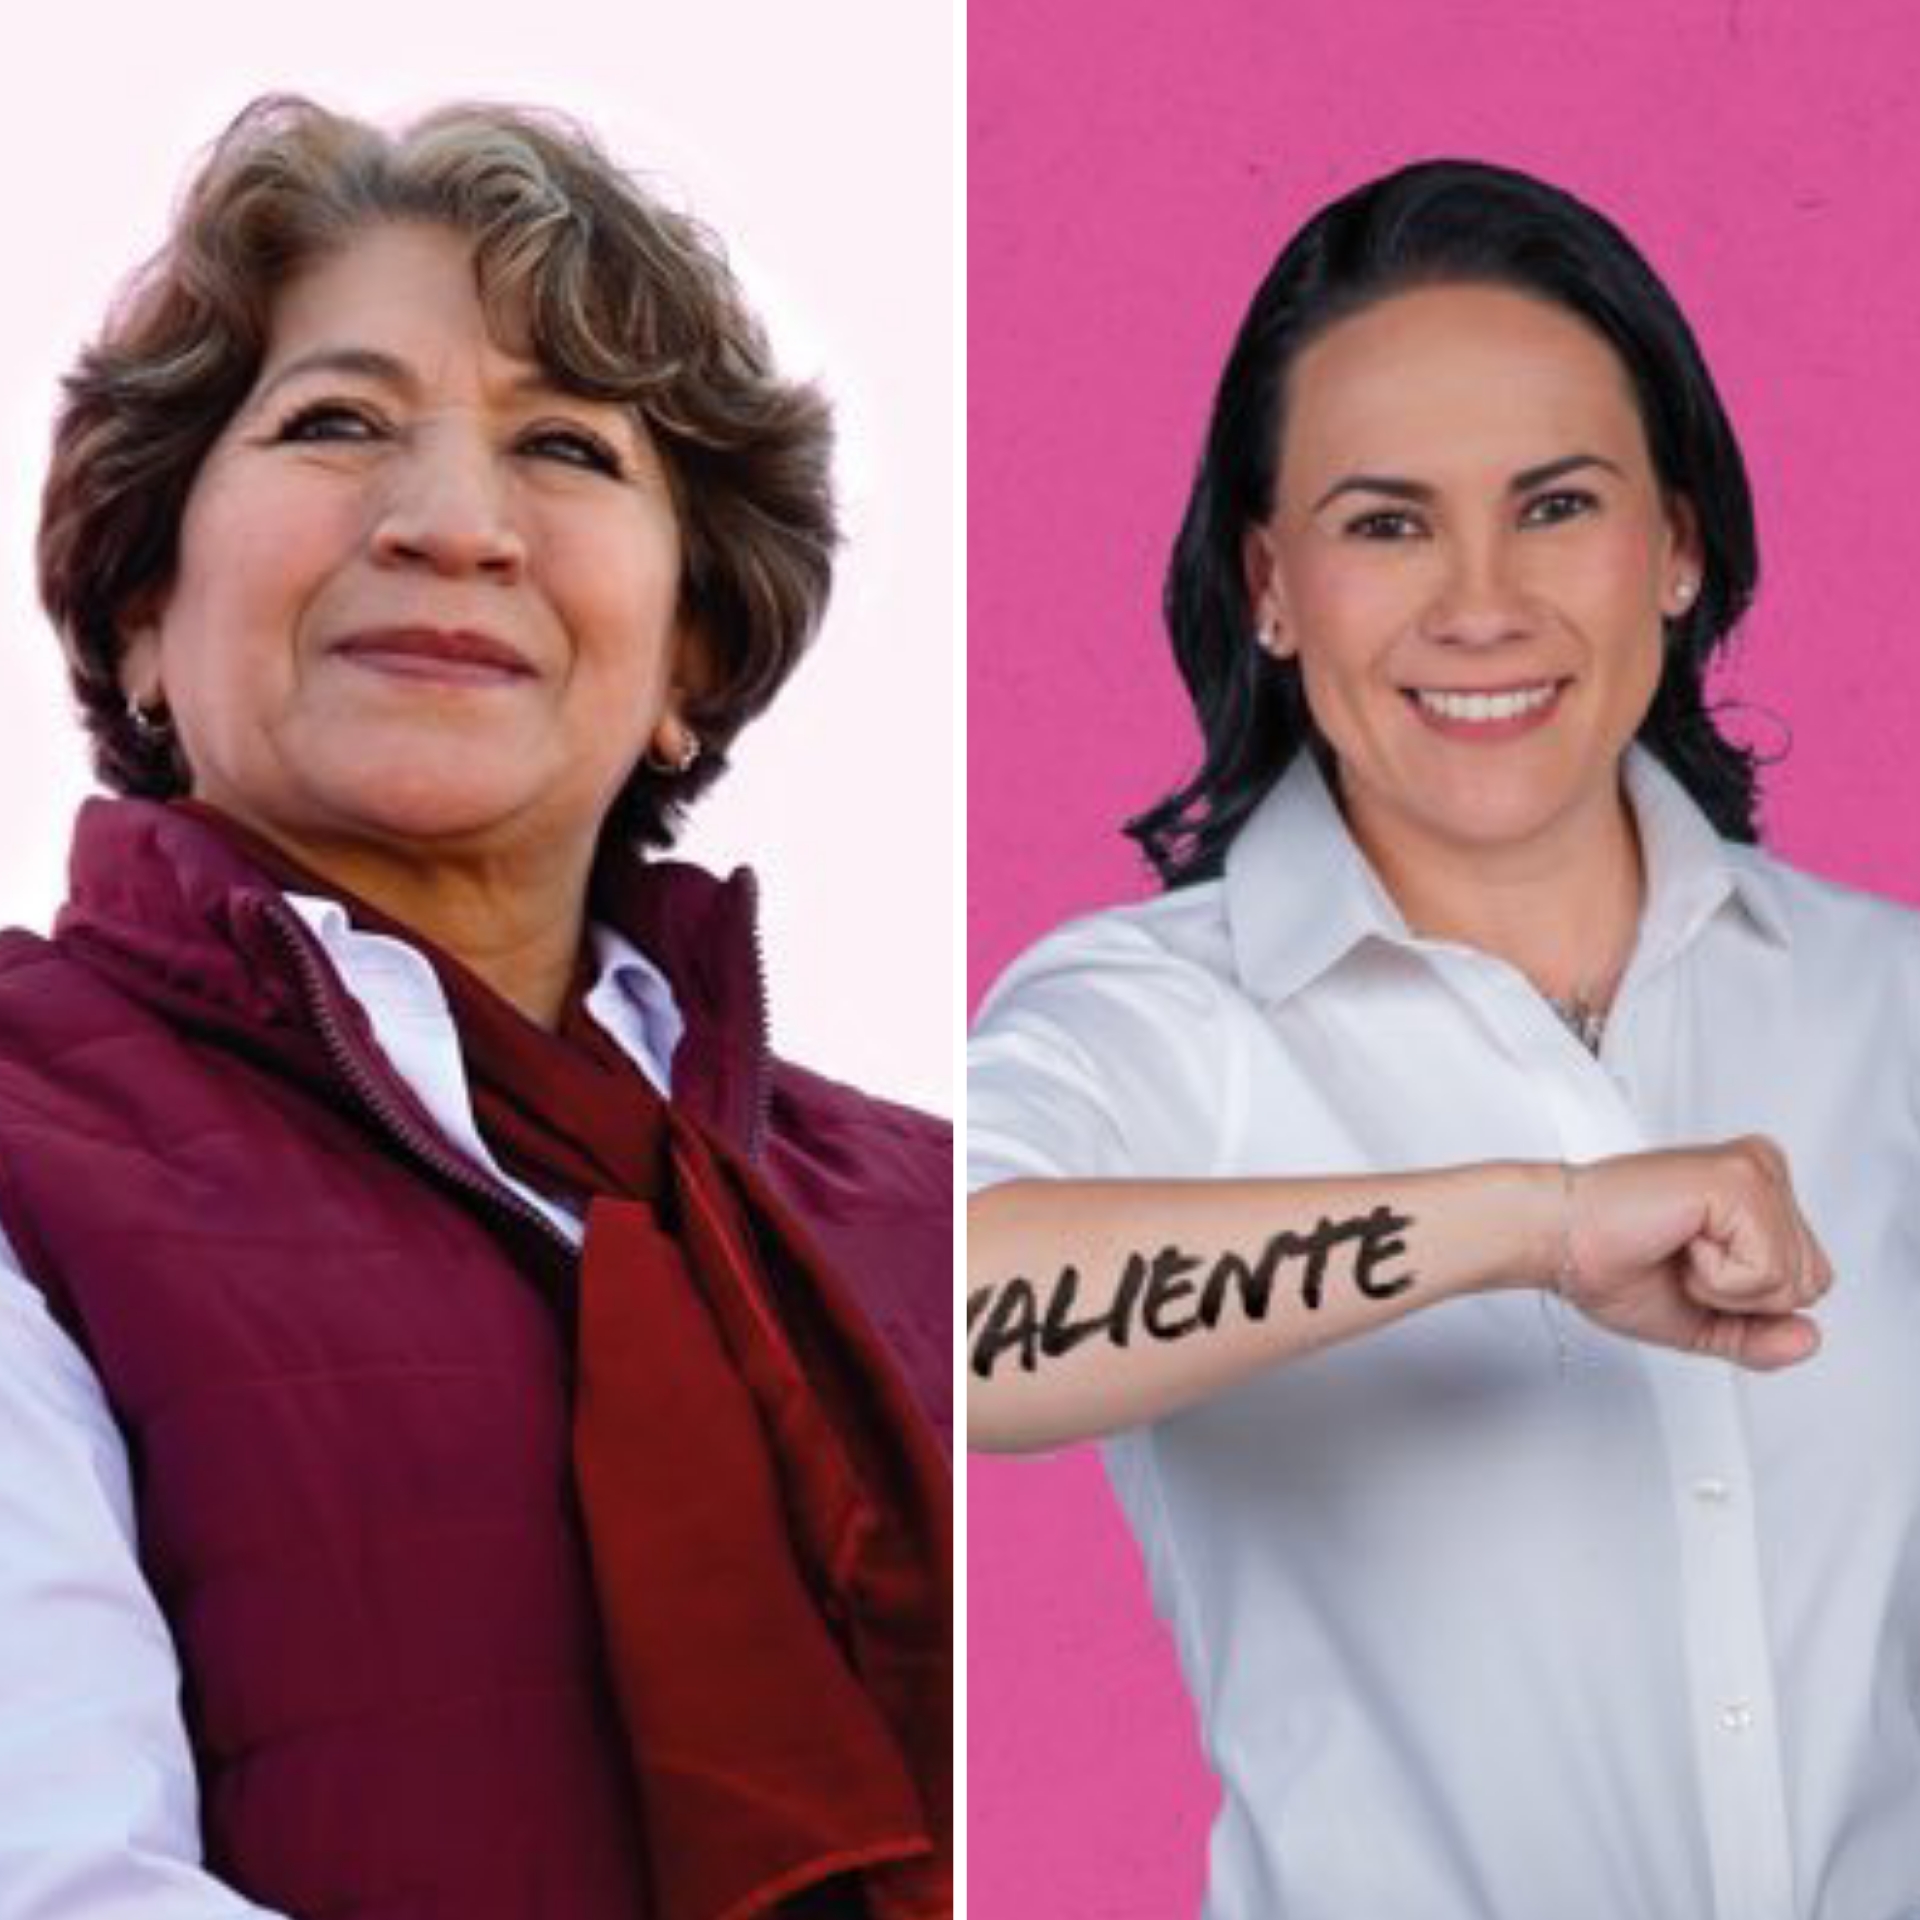 IEEM da fechas para debates entre Delfina Gómez y Ale del Moral #regionmx